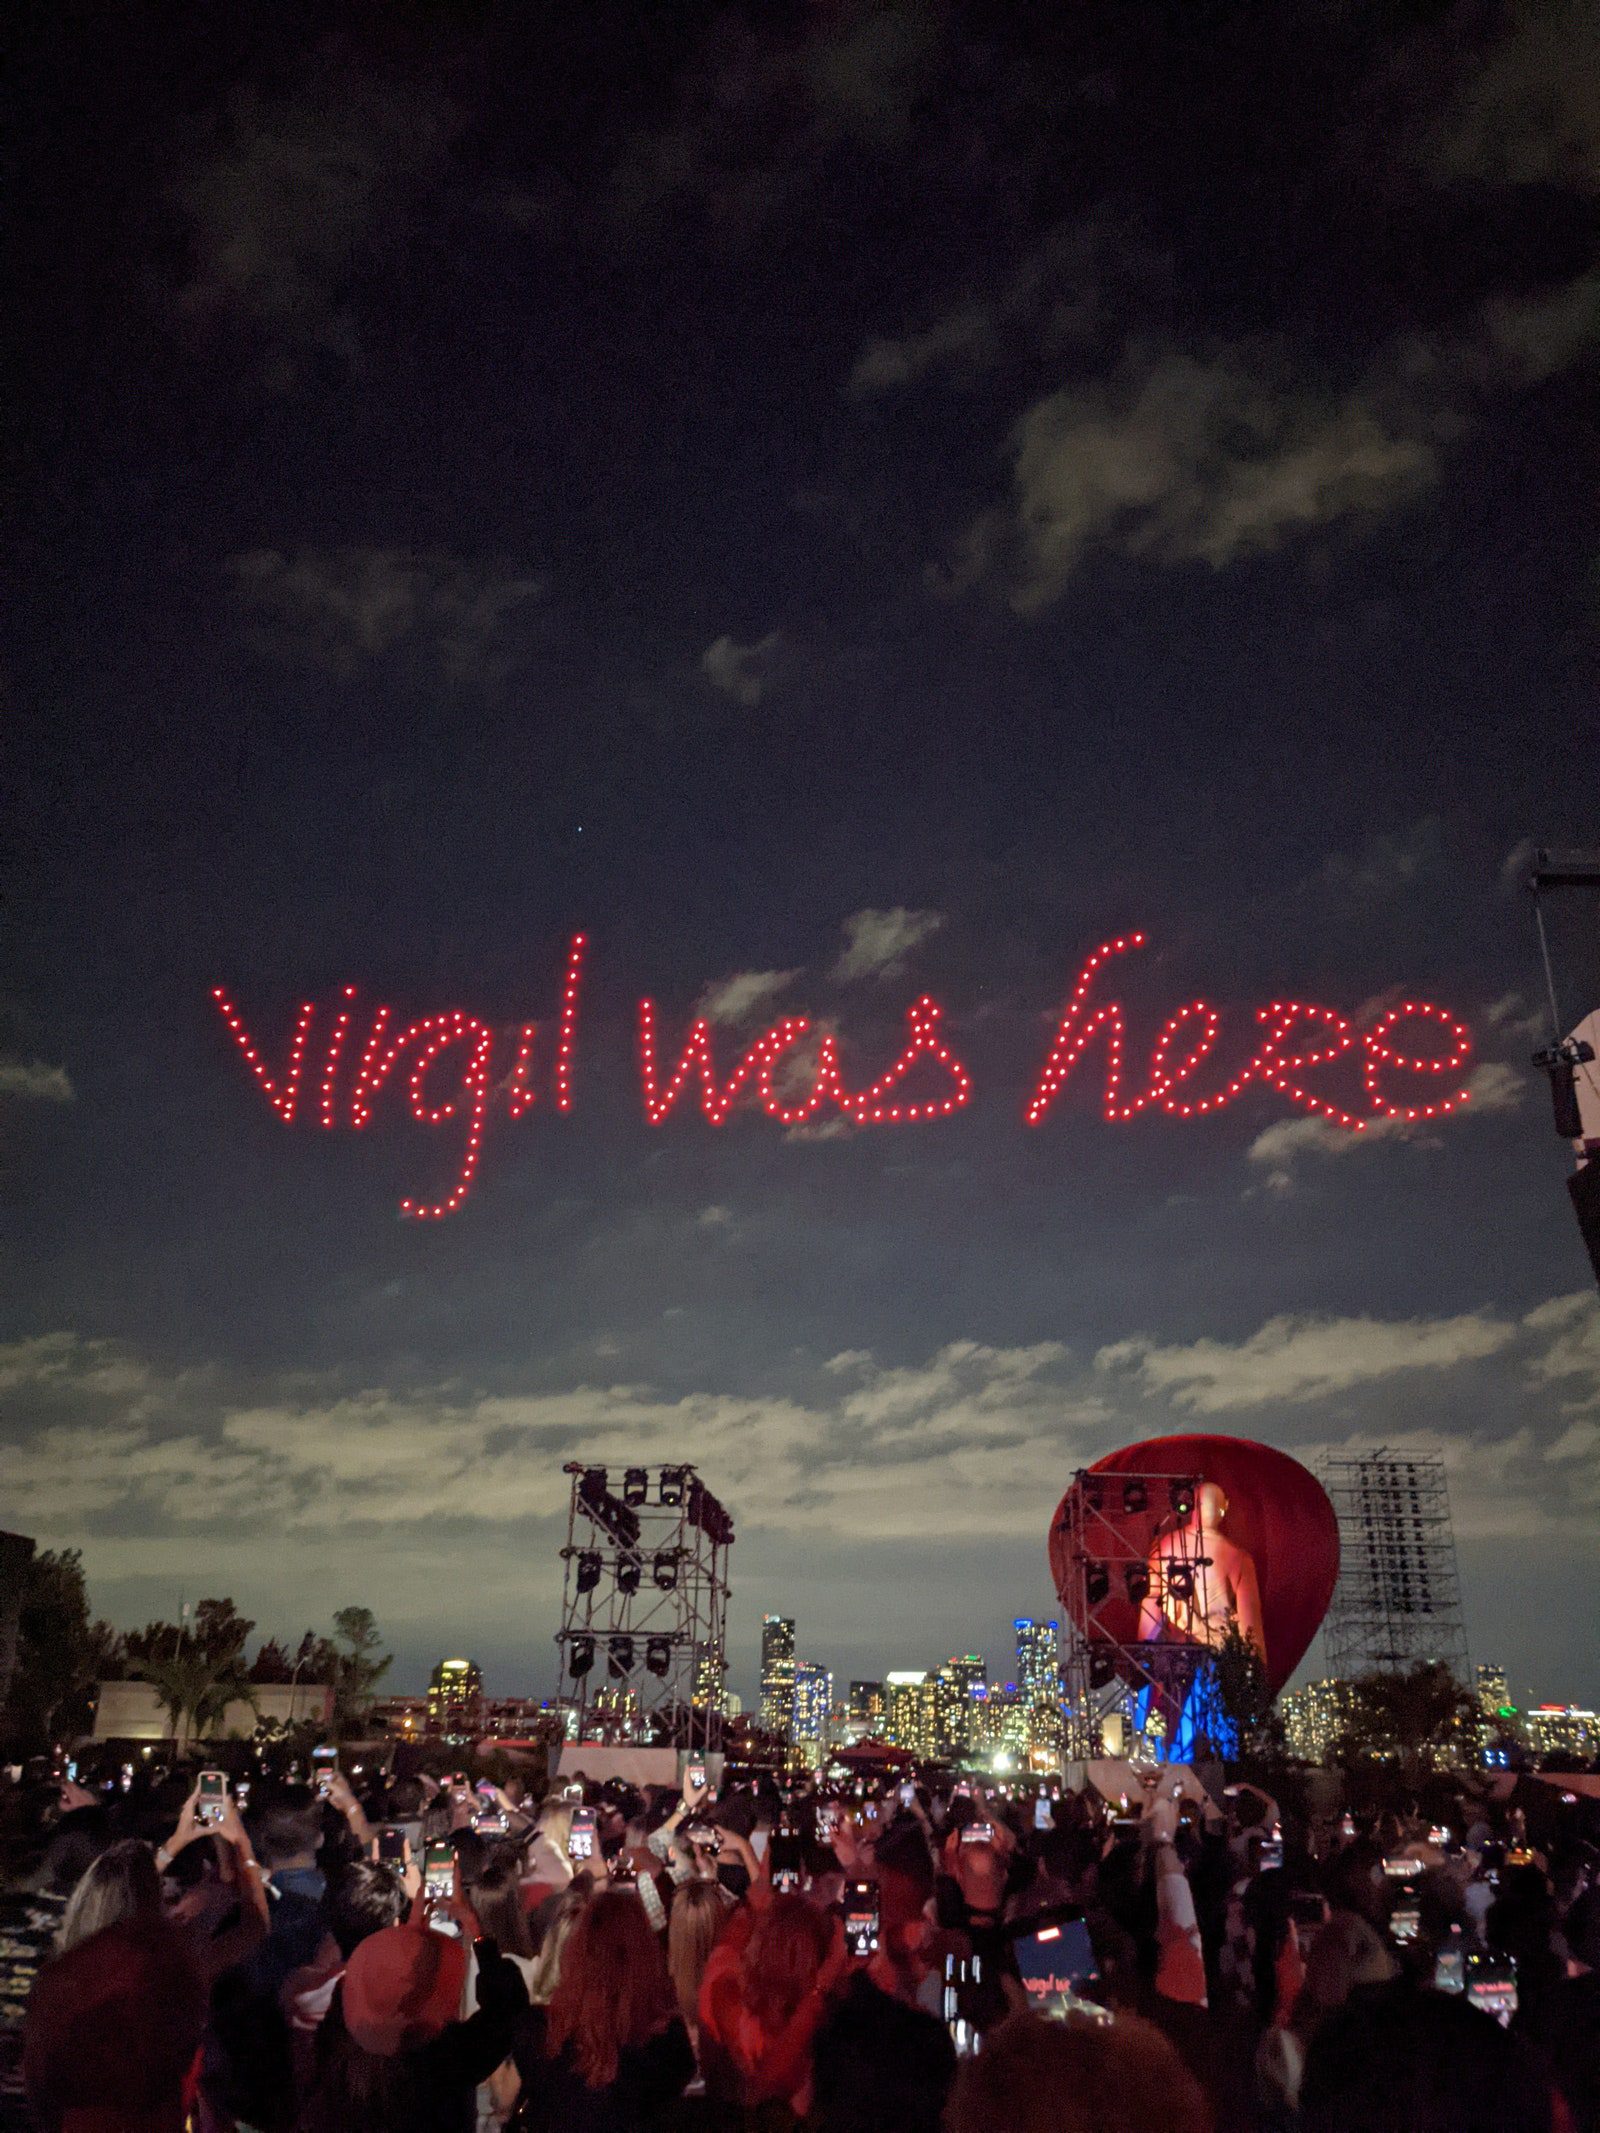 virgil was here